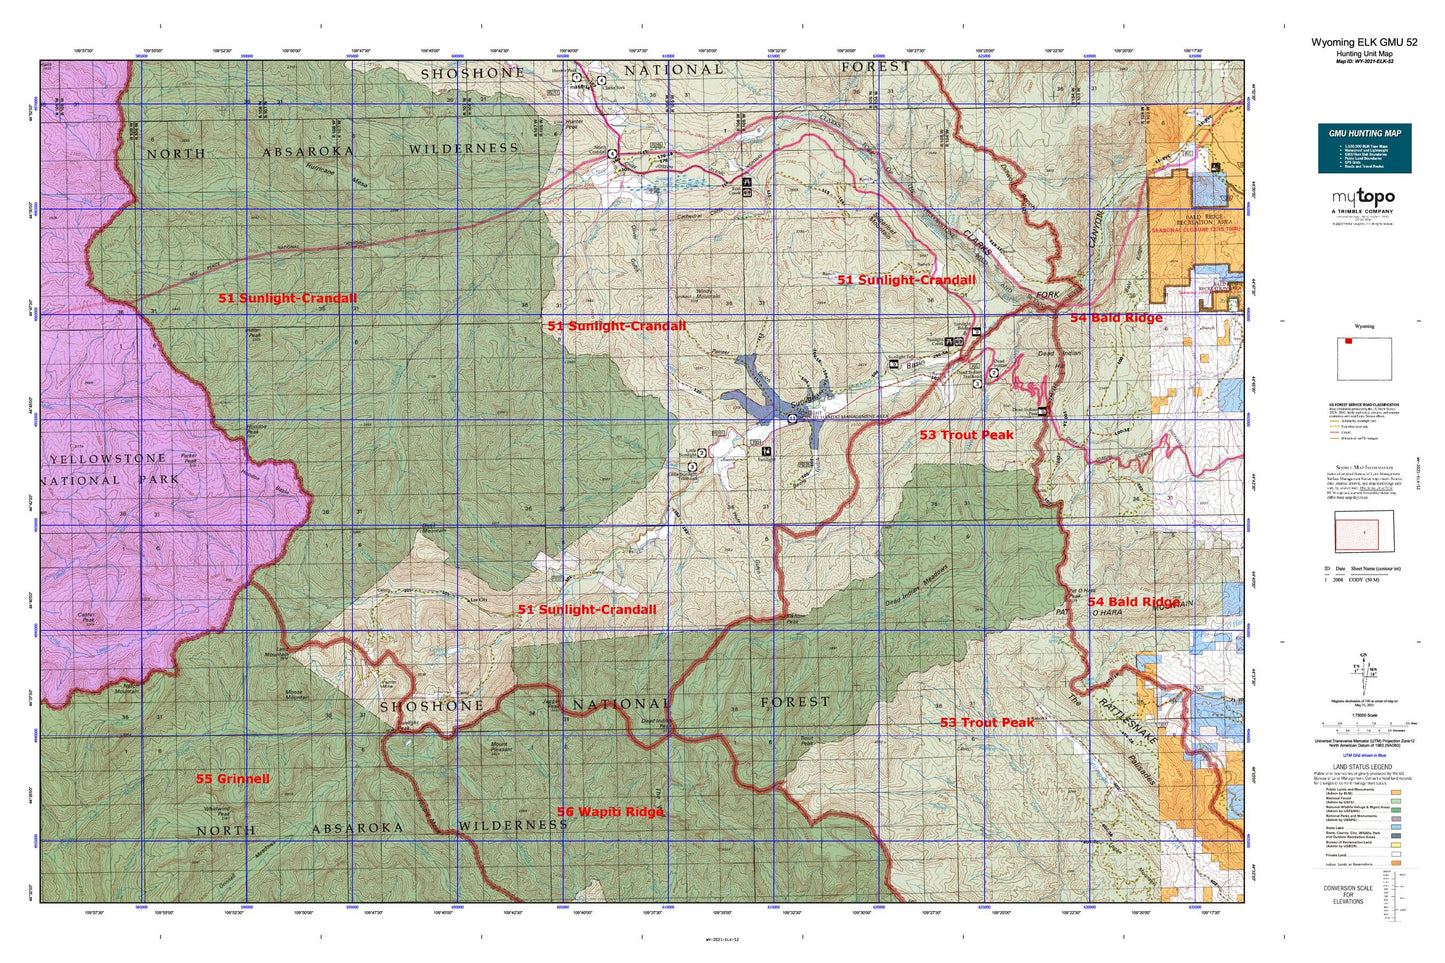 Wyoming Elk GMU 52 Map Image